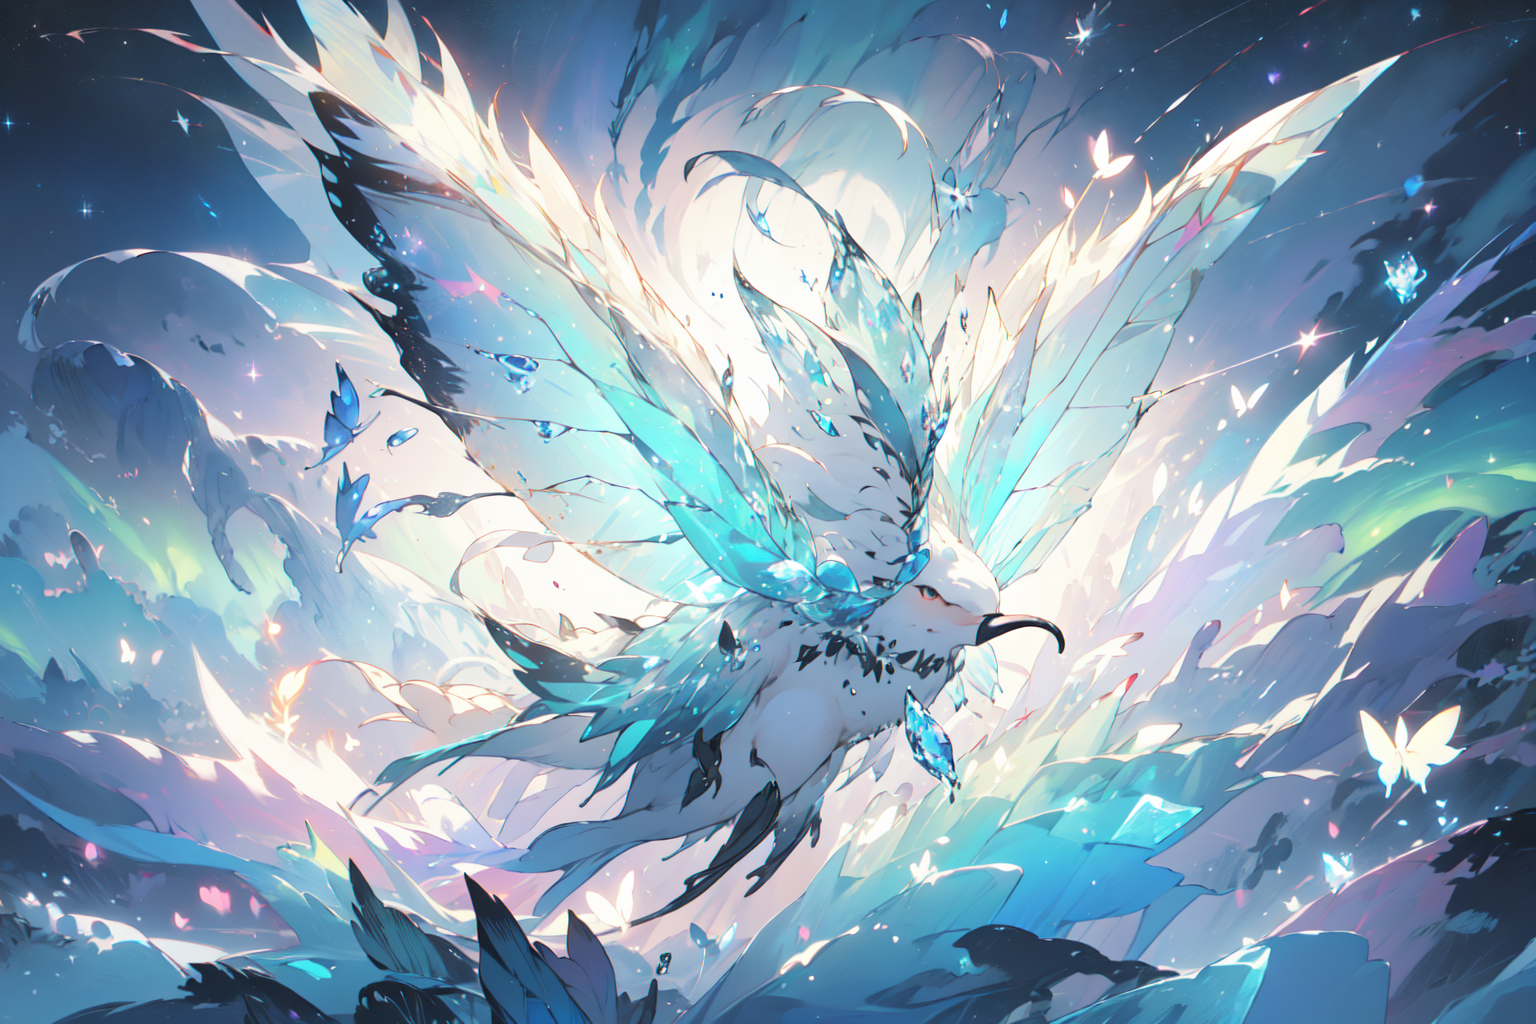 AI Art: Fluffy Ice Crystal Bird by @Subtra